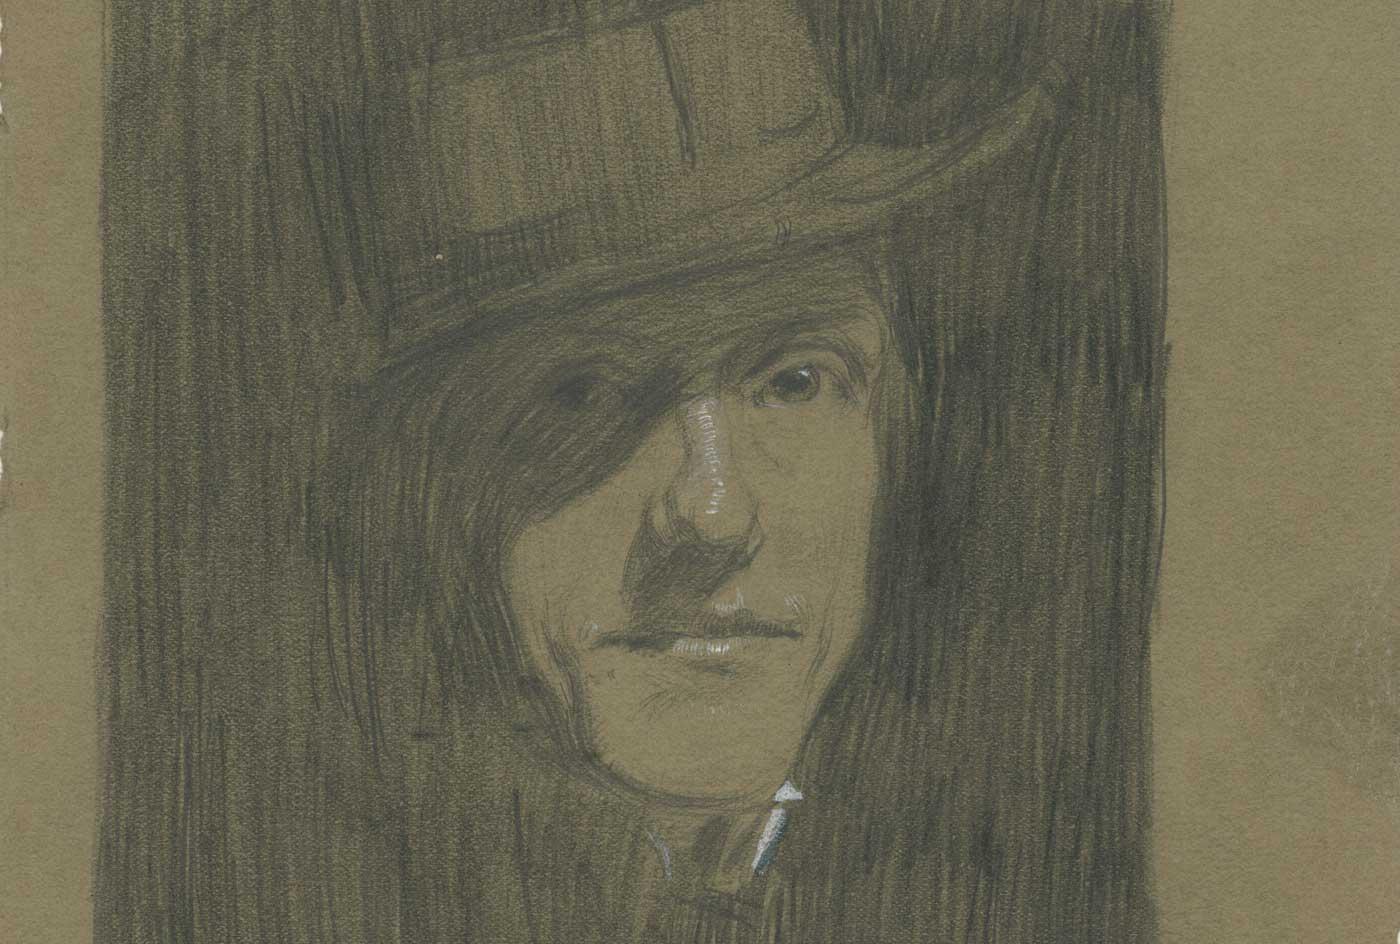 Self-Portrait with Porkpie Hat, 1901.